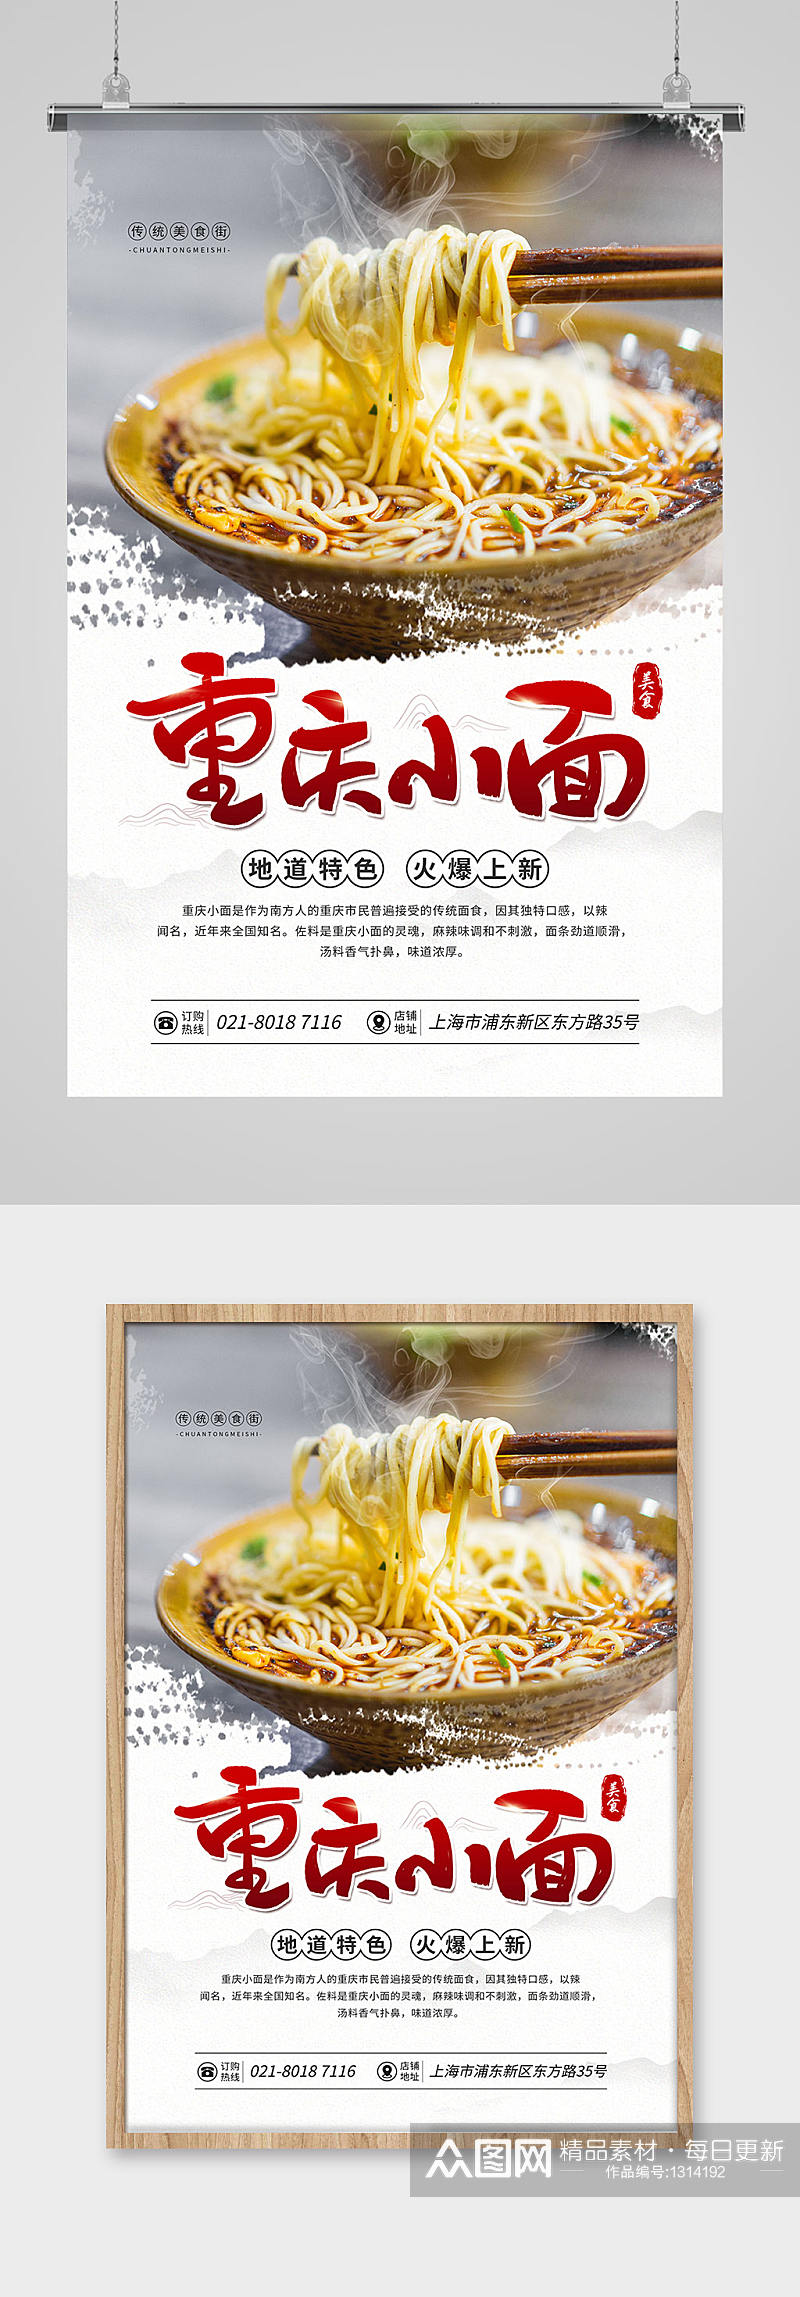 重庆小面特色美食促销宣传海报素材